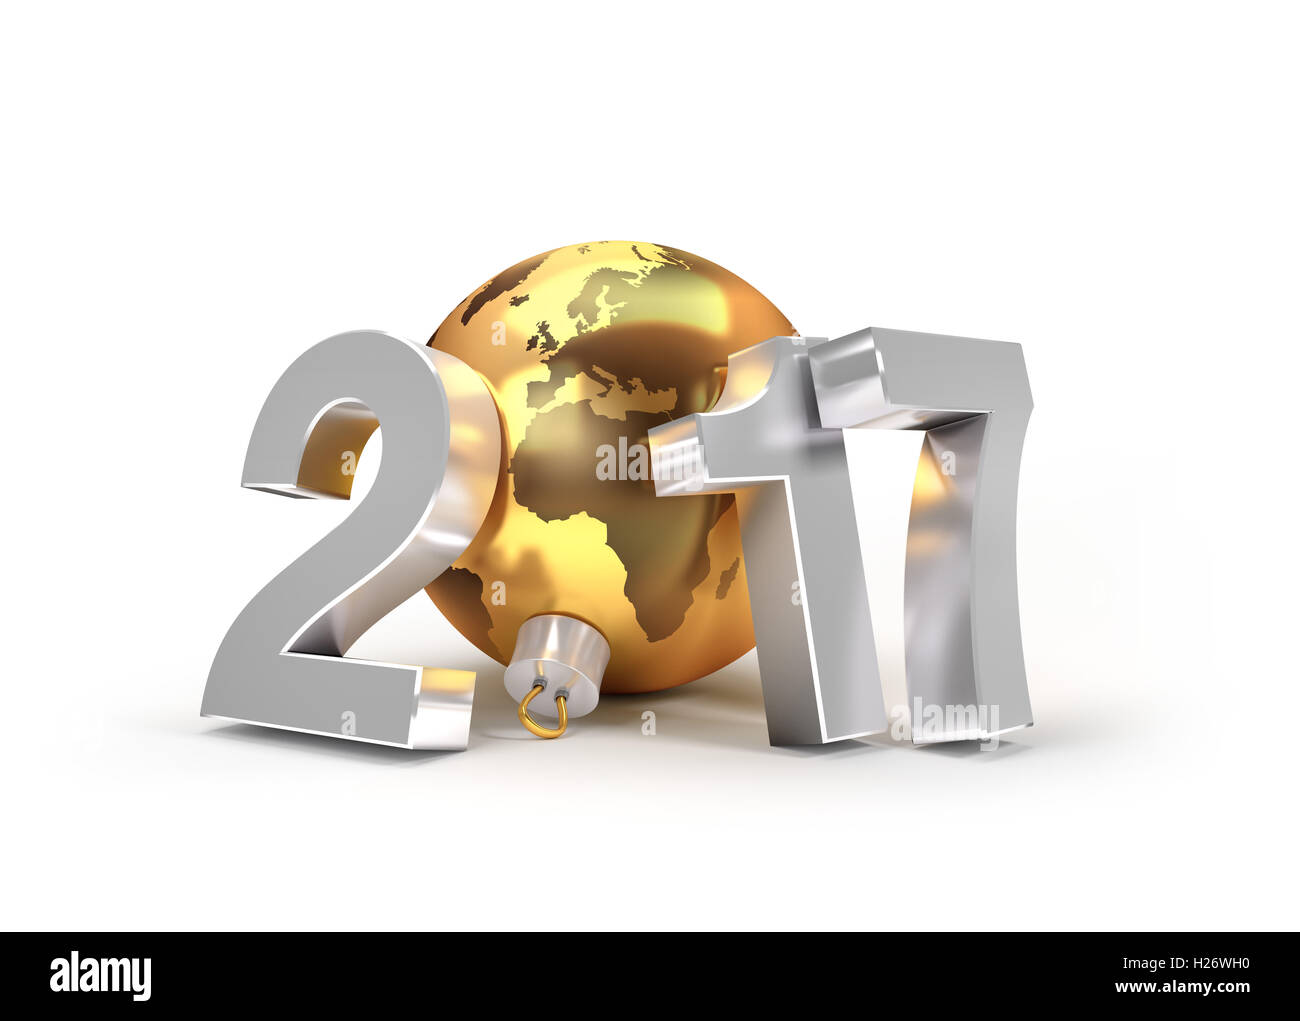 Nouvelle Année 2017 type avec la planète terre dans un gold Christmas ball - 3D illustration Banque D'Images